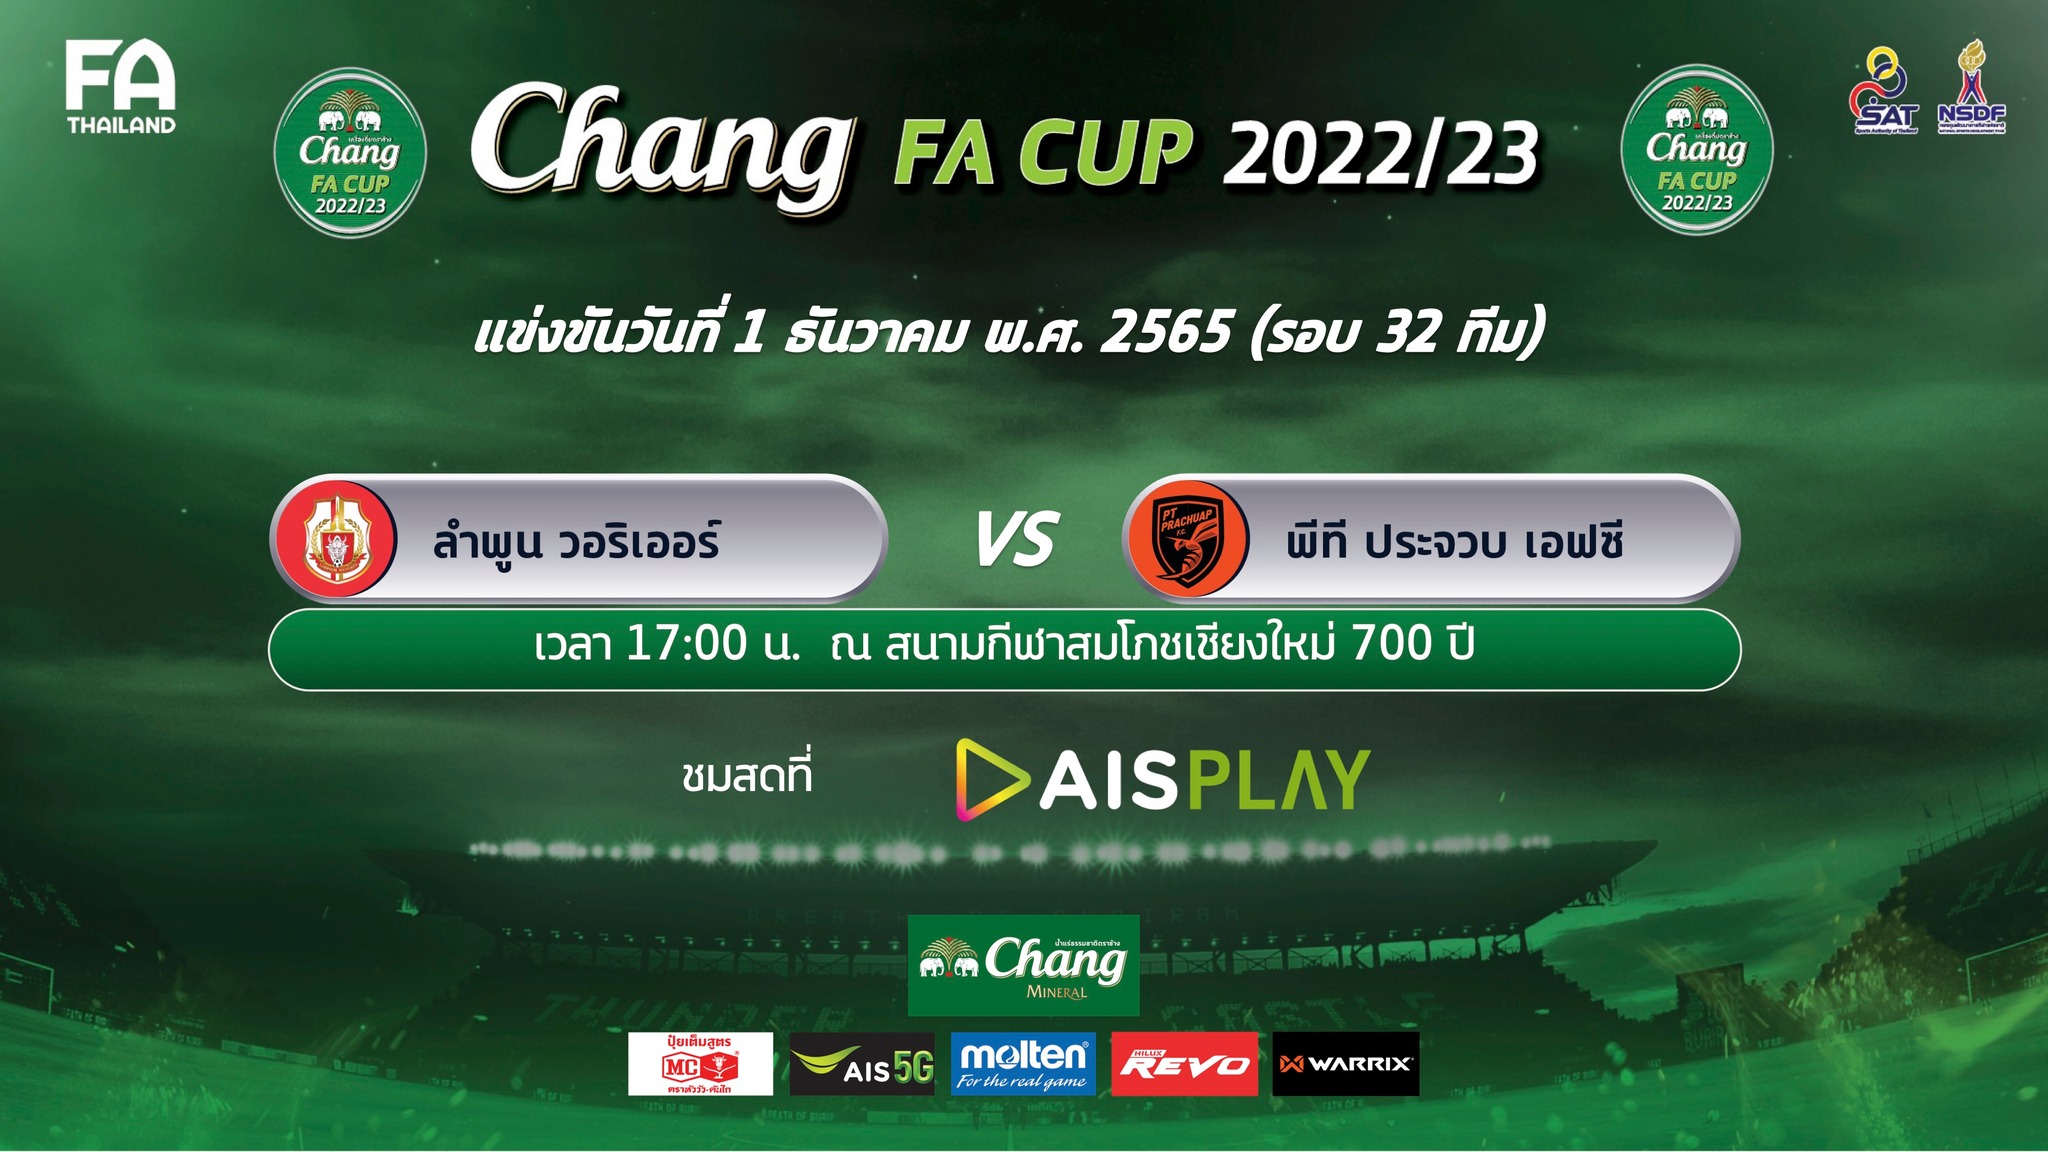 Chang FA Cup 2022-23 best32 Dec 1